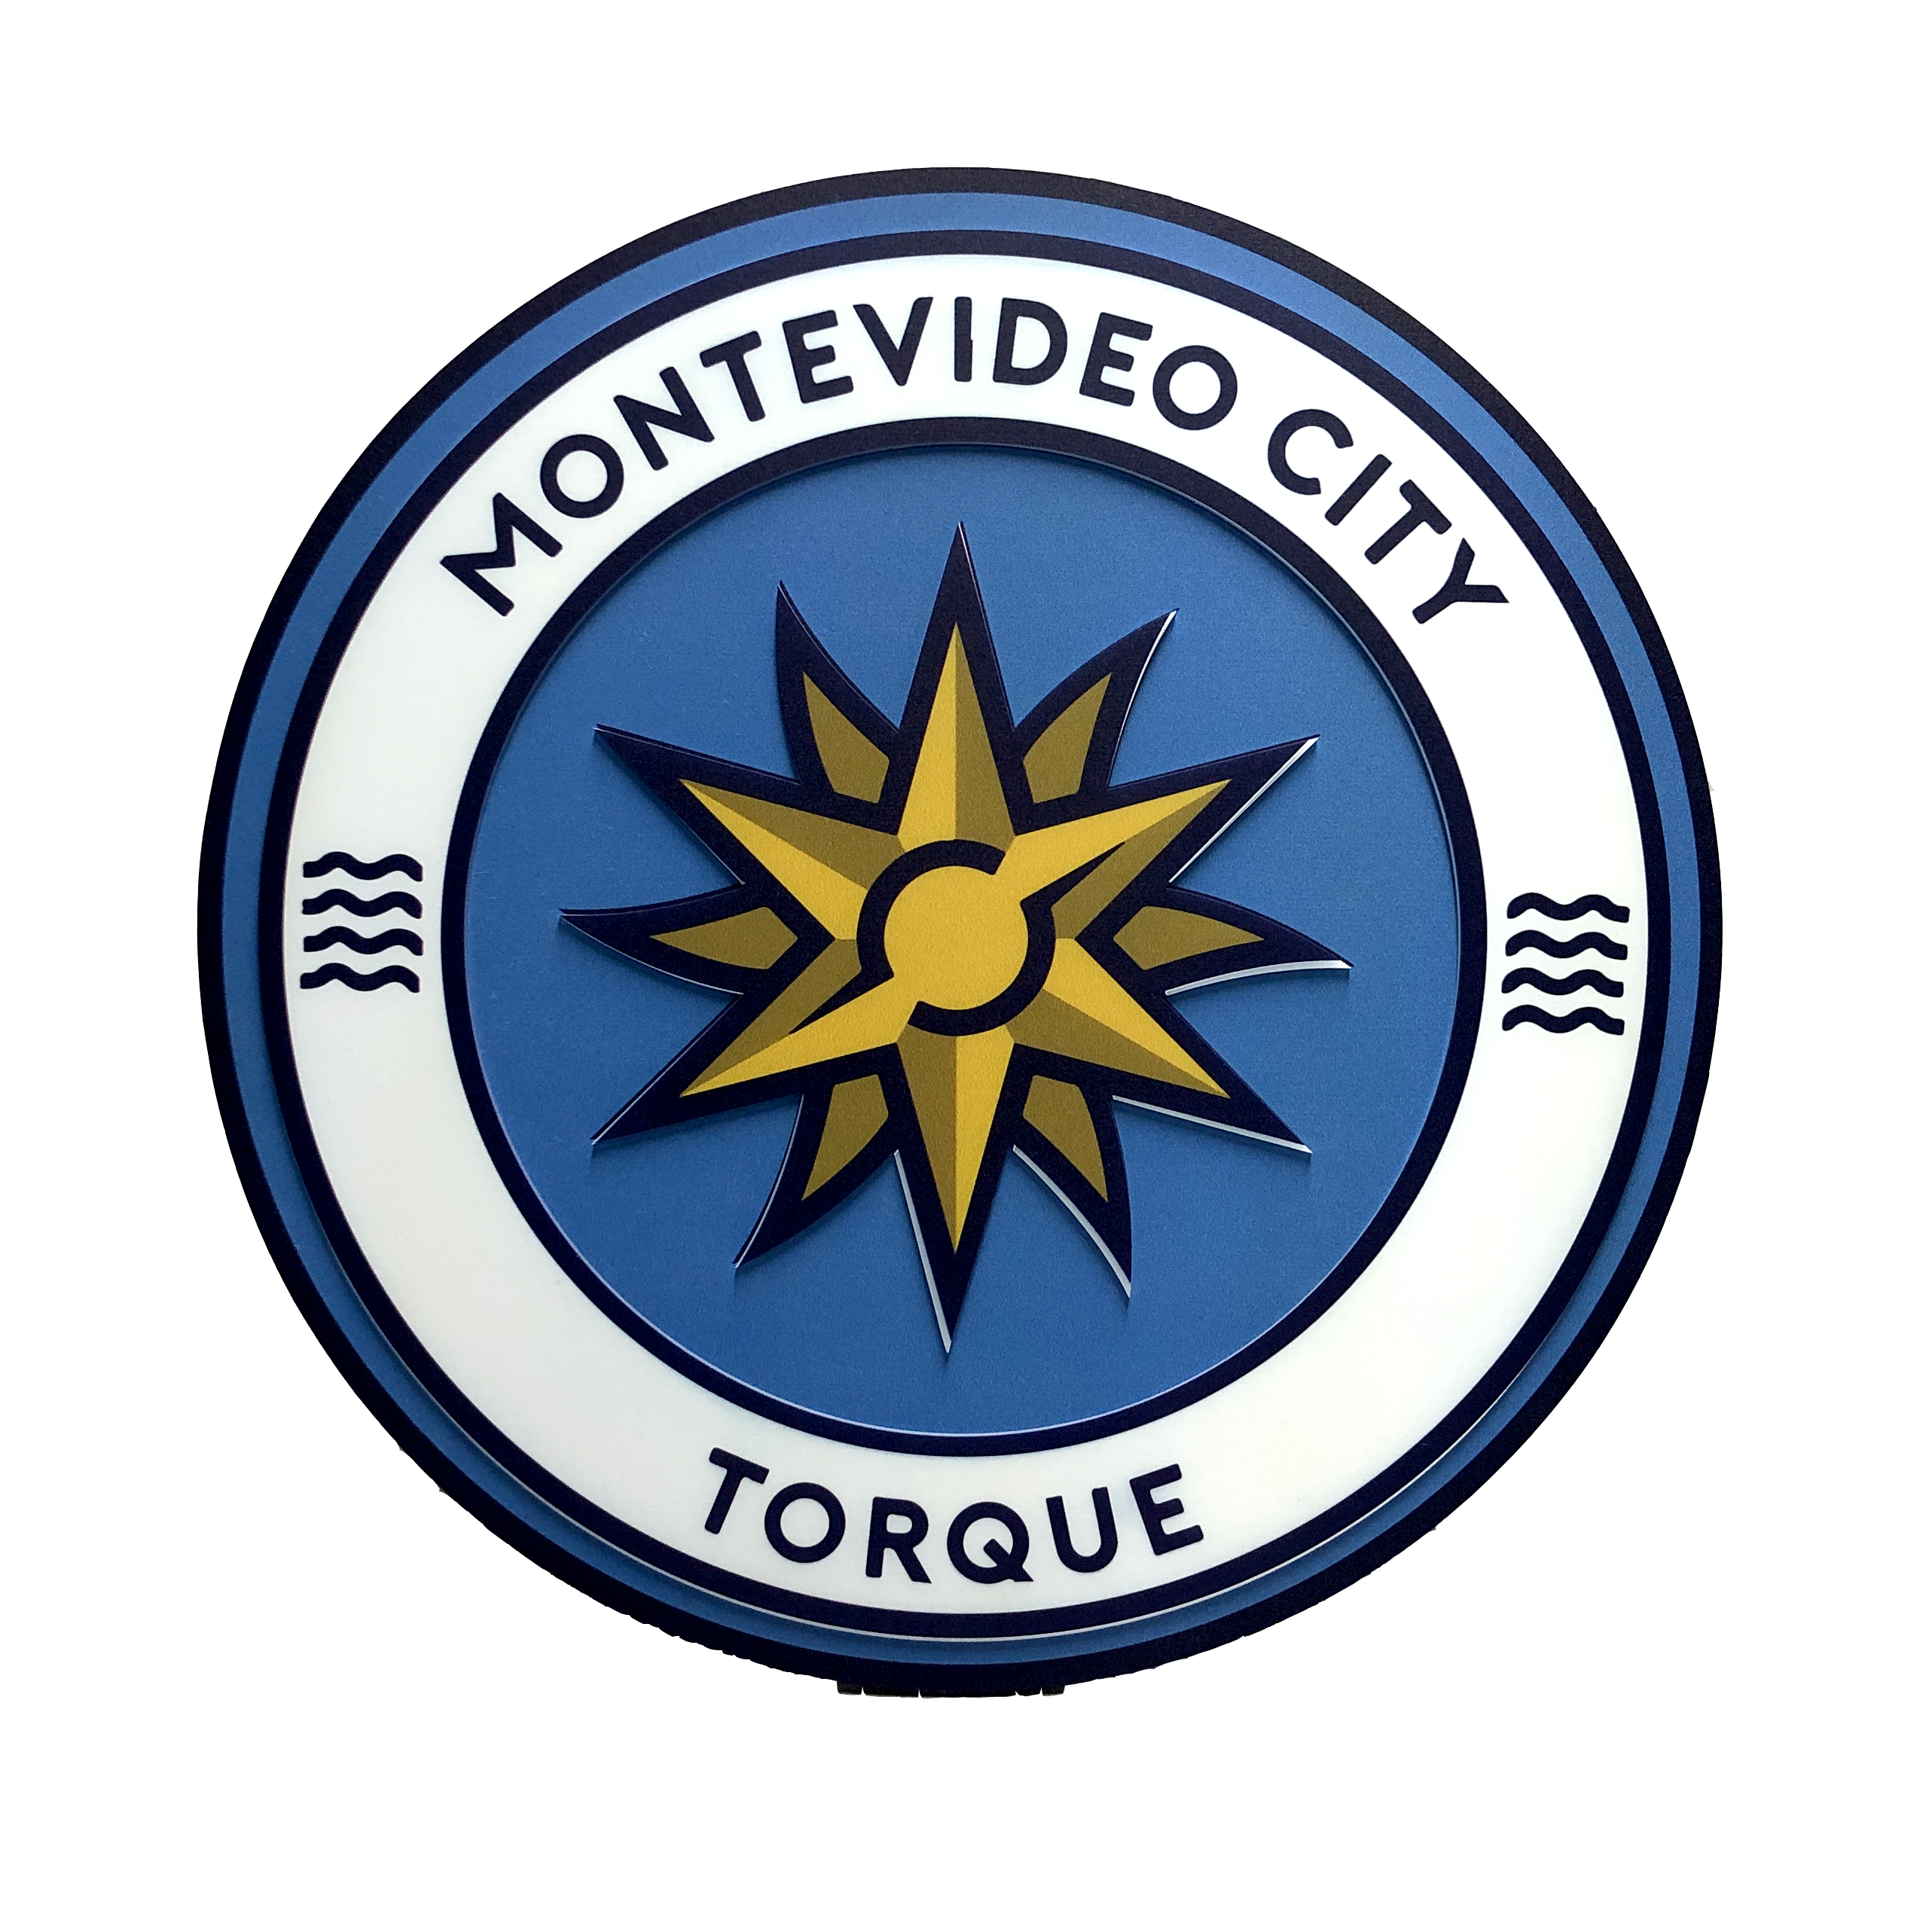 Club: Montevideo City Torque